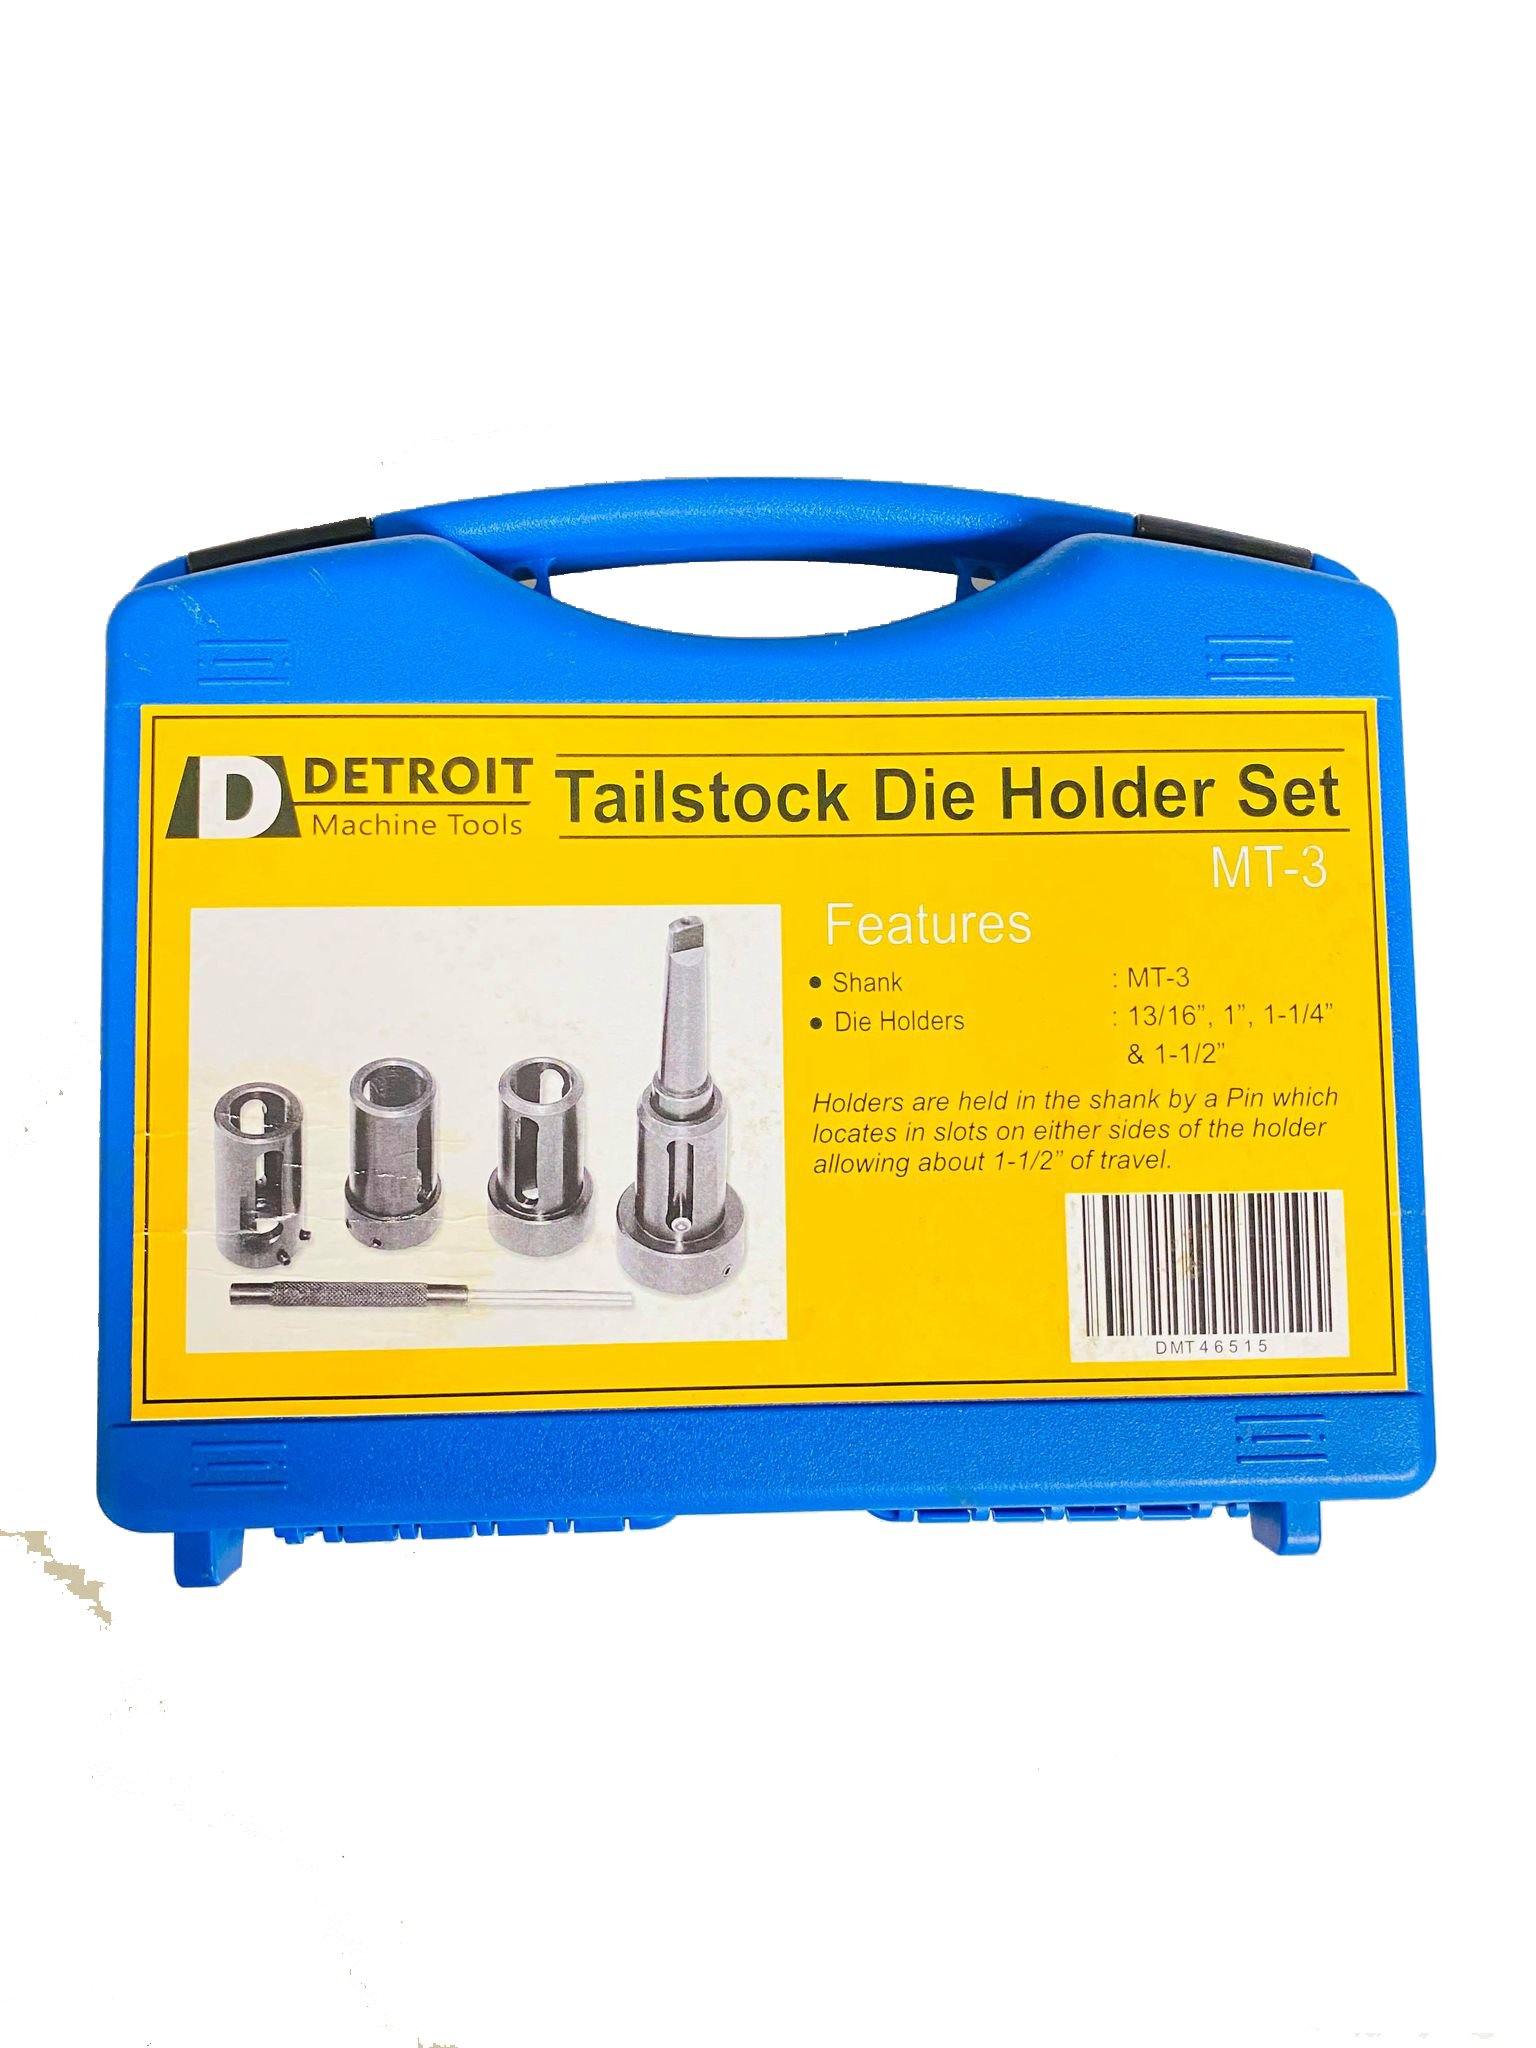 Tailstock Die Holder Set MT3 - smithy.com